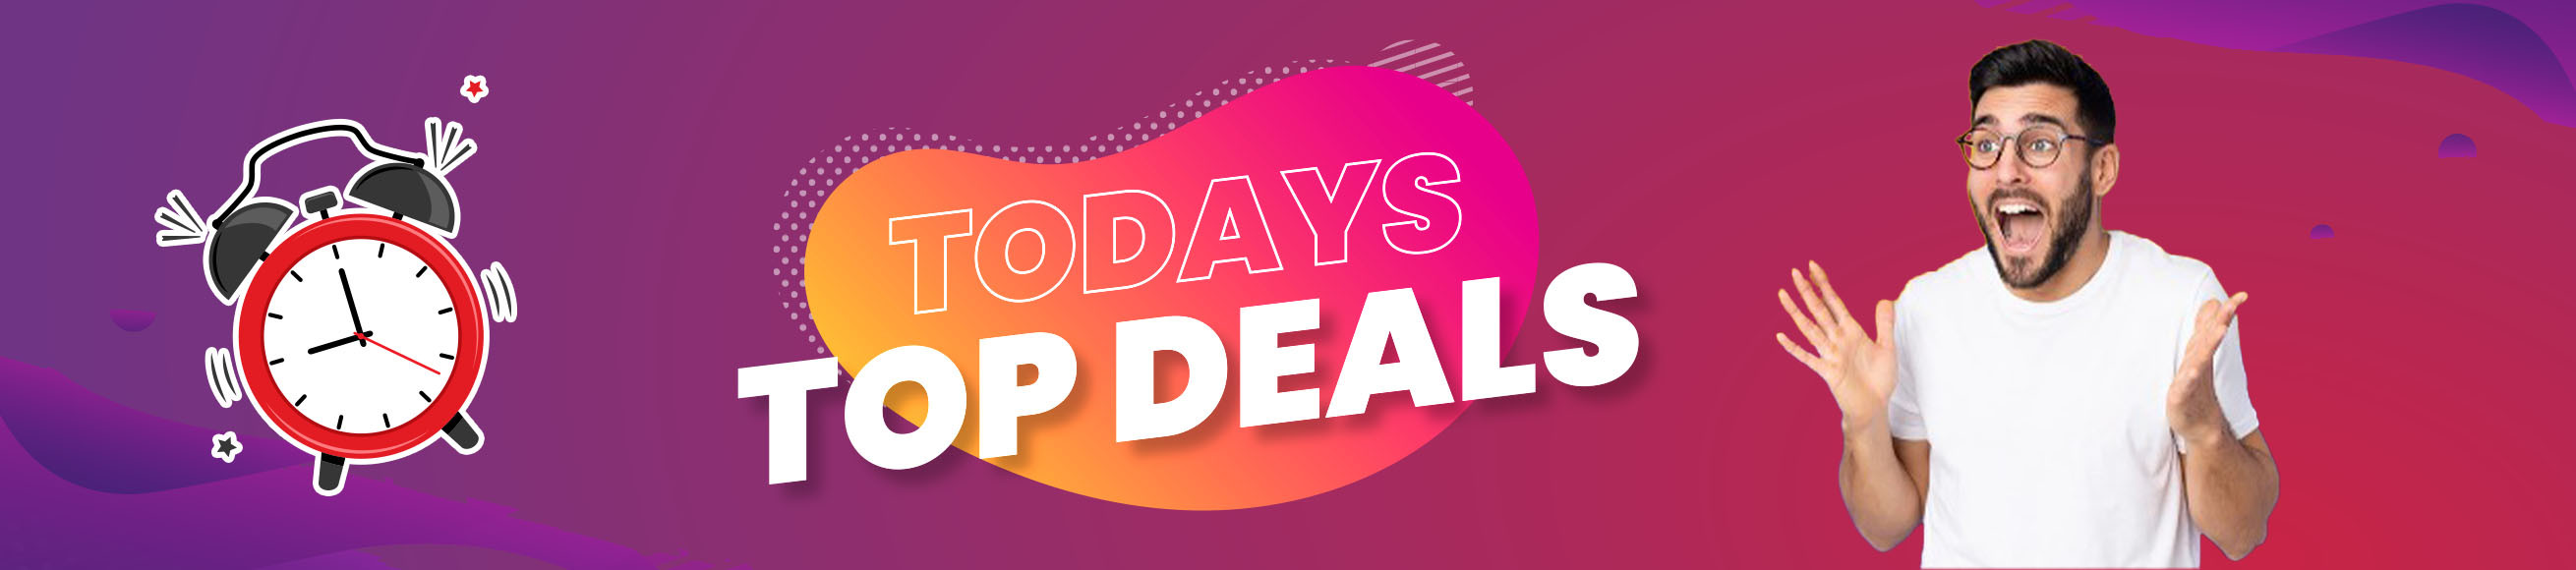 Today's Top Deals